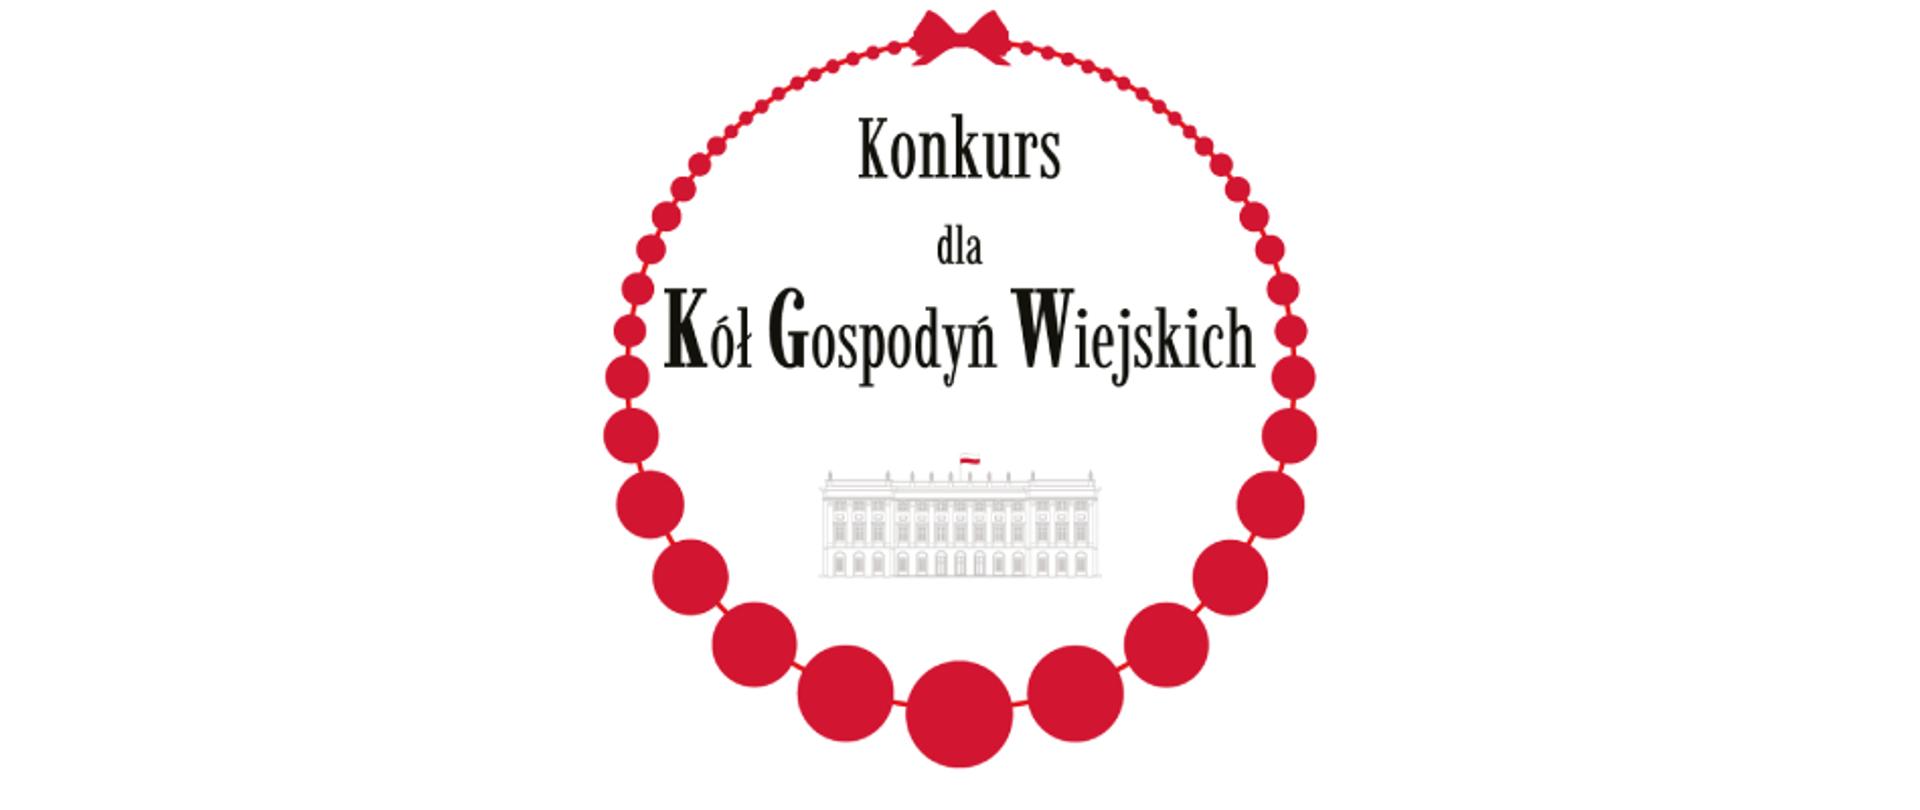 Baner z logo konkursowym oparte na okręgu złożonym z czerwonych korali. W środku wizerunek pałacu prezydenckiego, a ponad nim napis Konkurs dla Kół Gospodyń Wiejskich